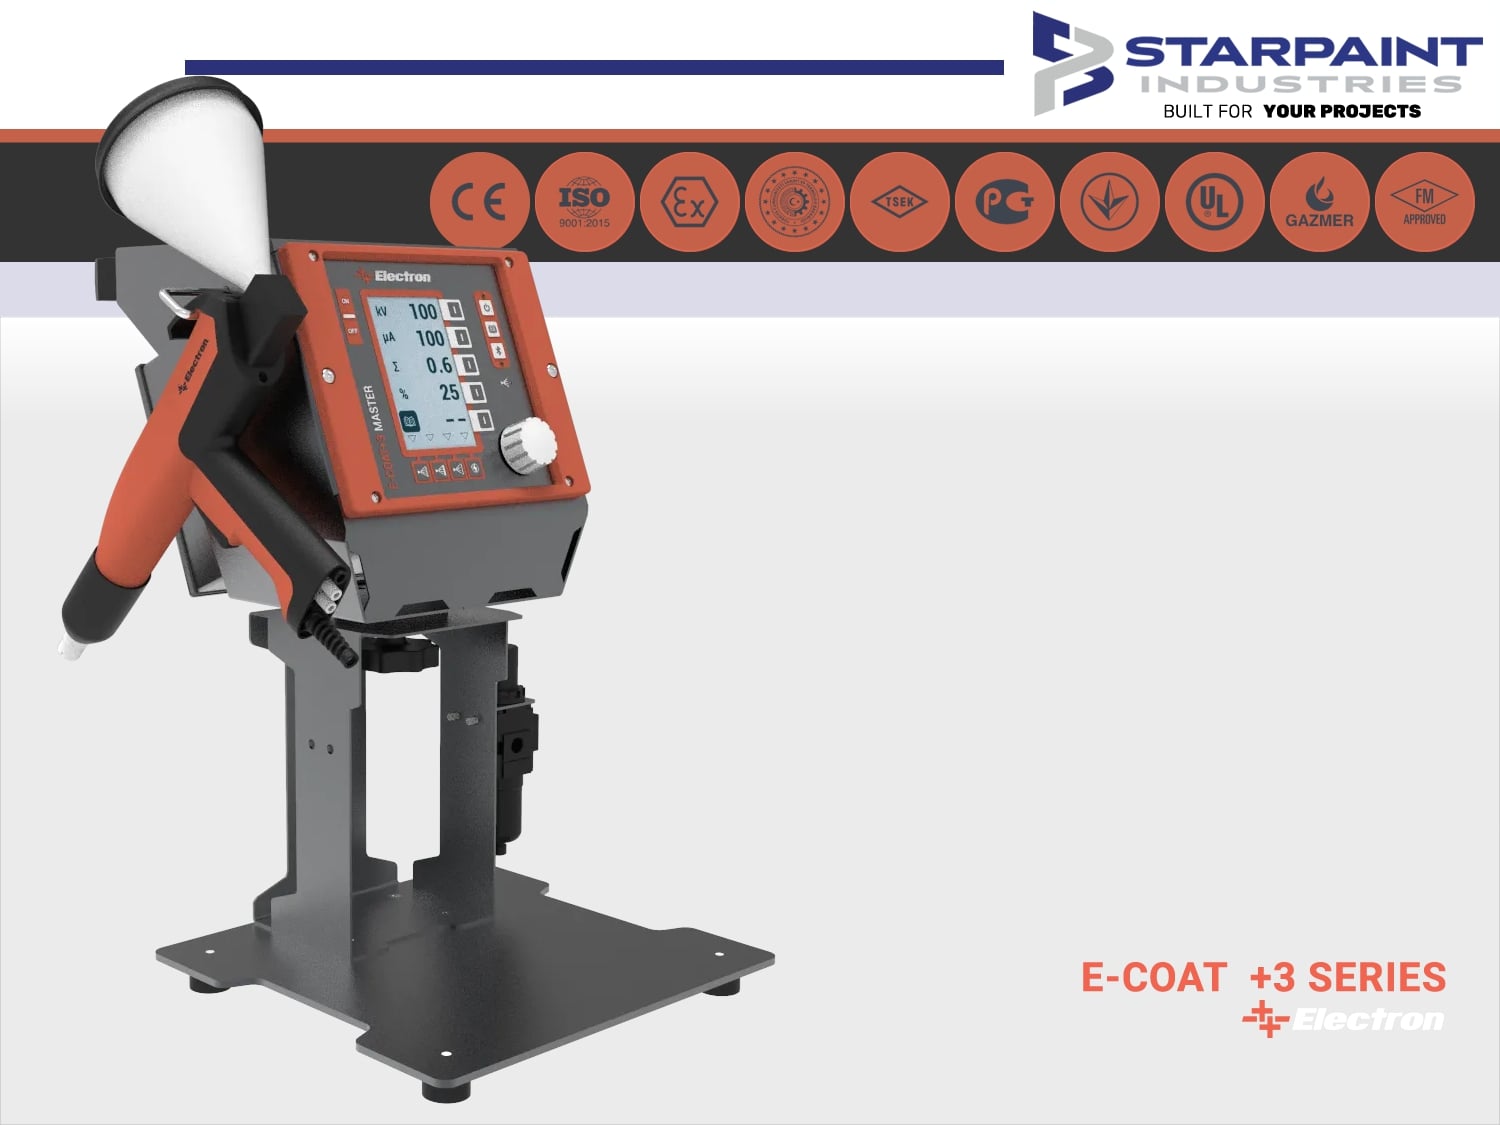 Electron Pulverpistole E-Coat +3 Master Laborset - Starpaint Industries -  Industrielle Beschichtungssysteme Pulverbeschichtungsanlagen